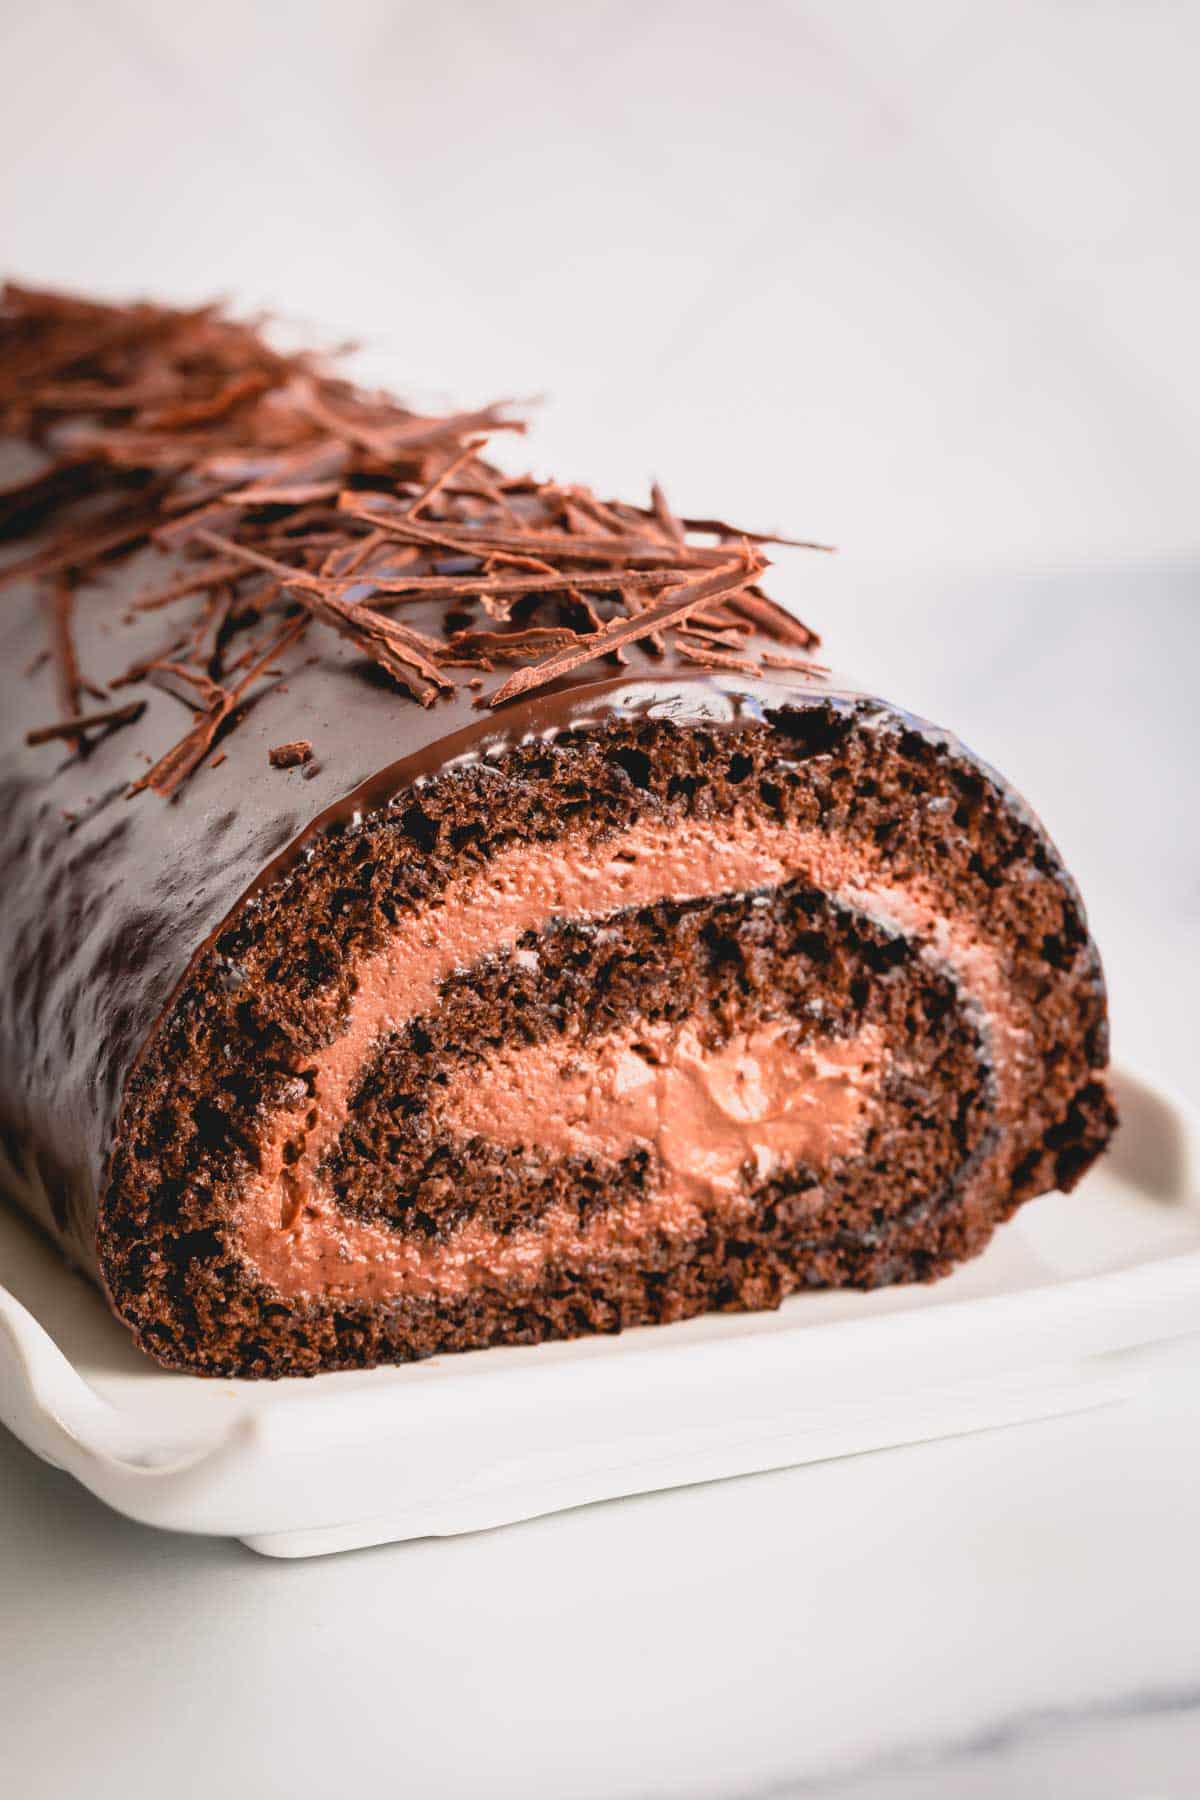 https://www.sweetandsavorybyshinee.com/wp-content/uploads/2022/11/Chocolate-Roll-Cake-1.jpg